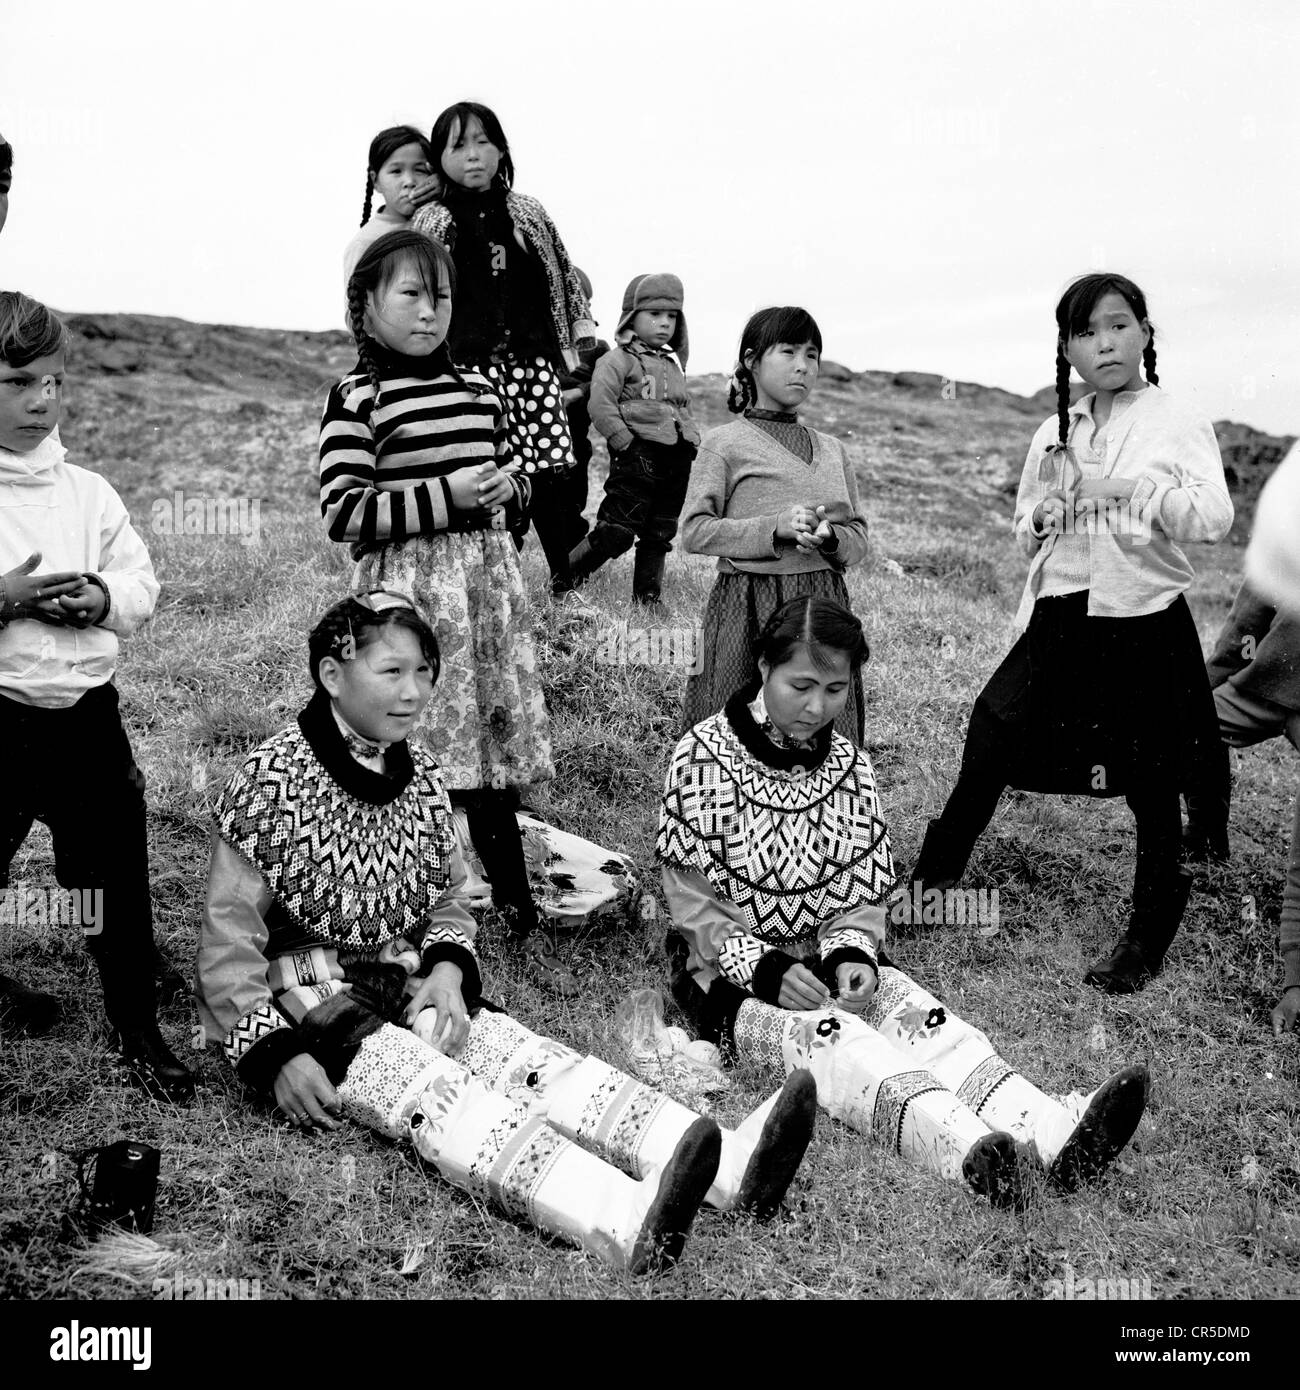 Années 1950. Image historique d'Esquimau ou jeunes enfants inuits, certains  en costume traditionnel, se sont réunis sur une colline dans le Groenland  Photo Stock - Alamy